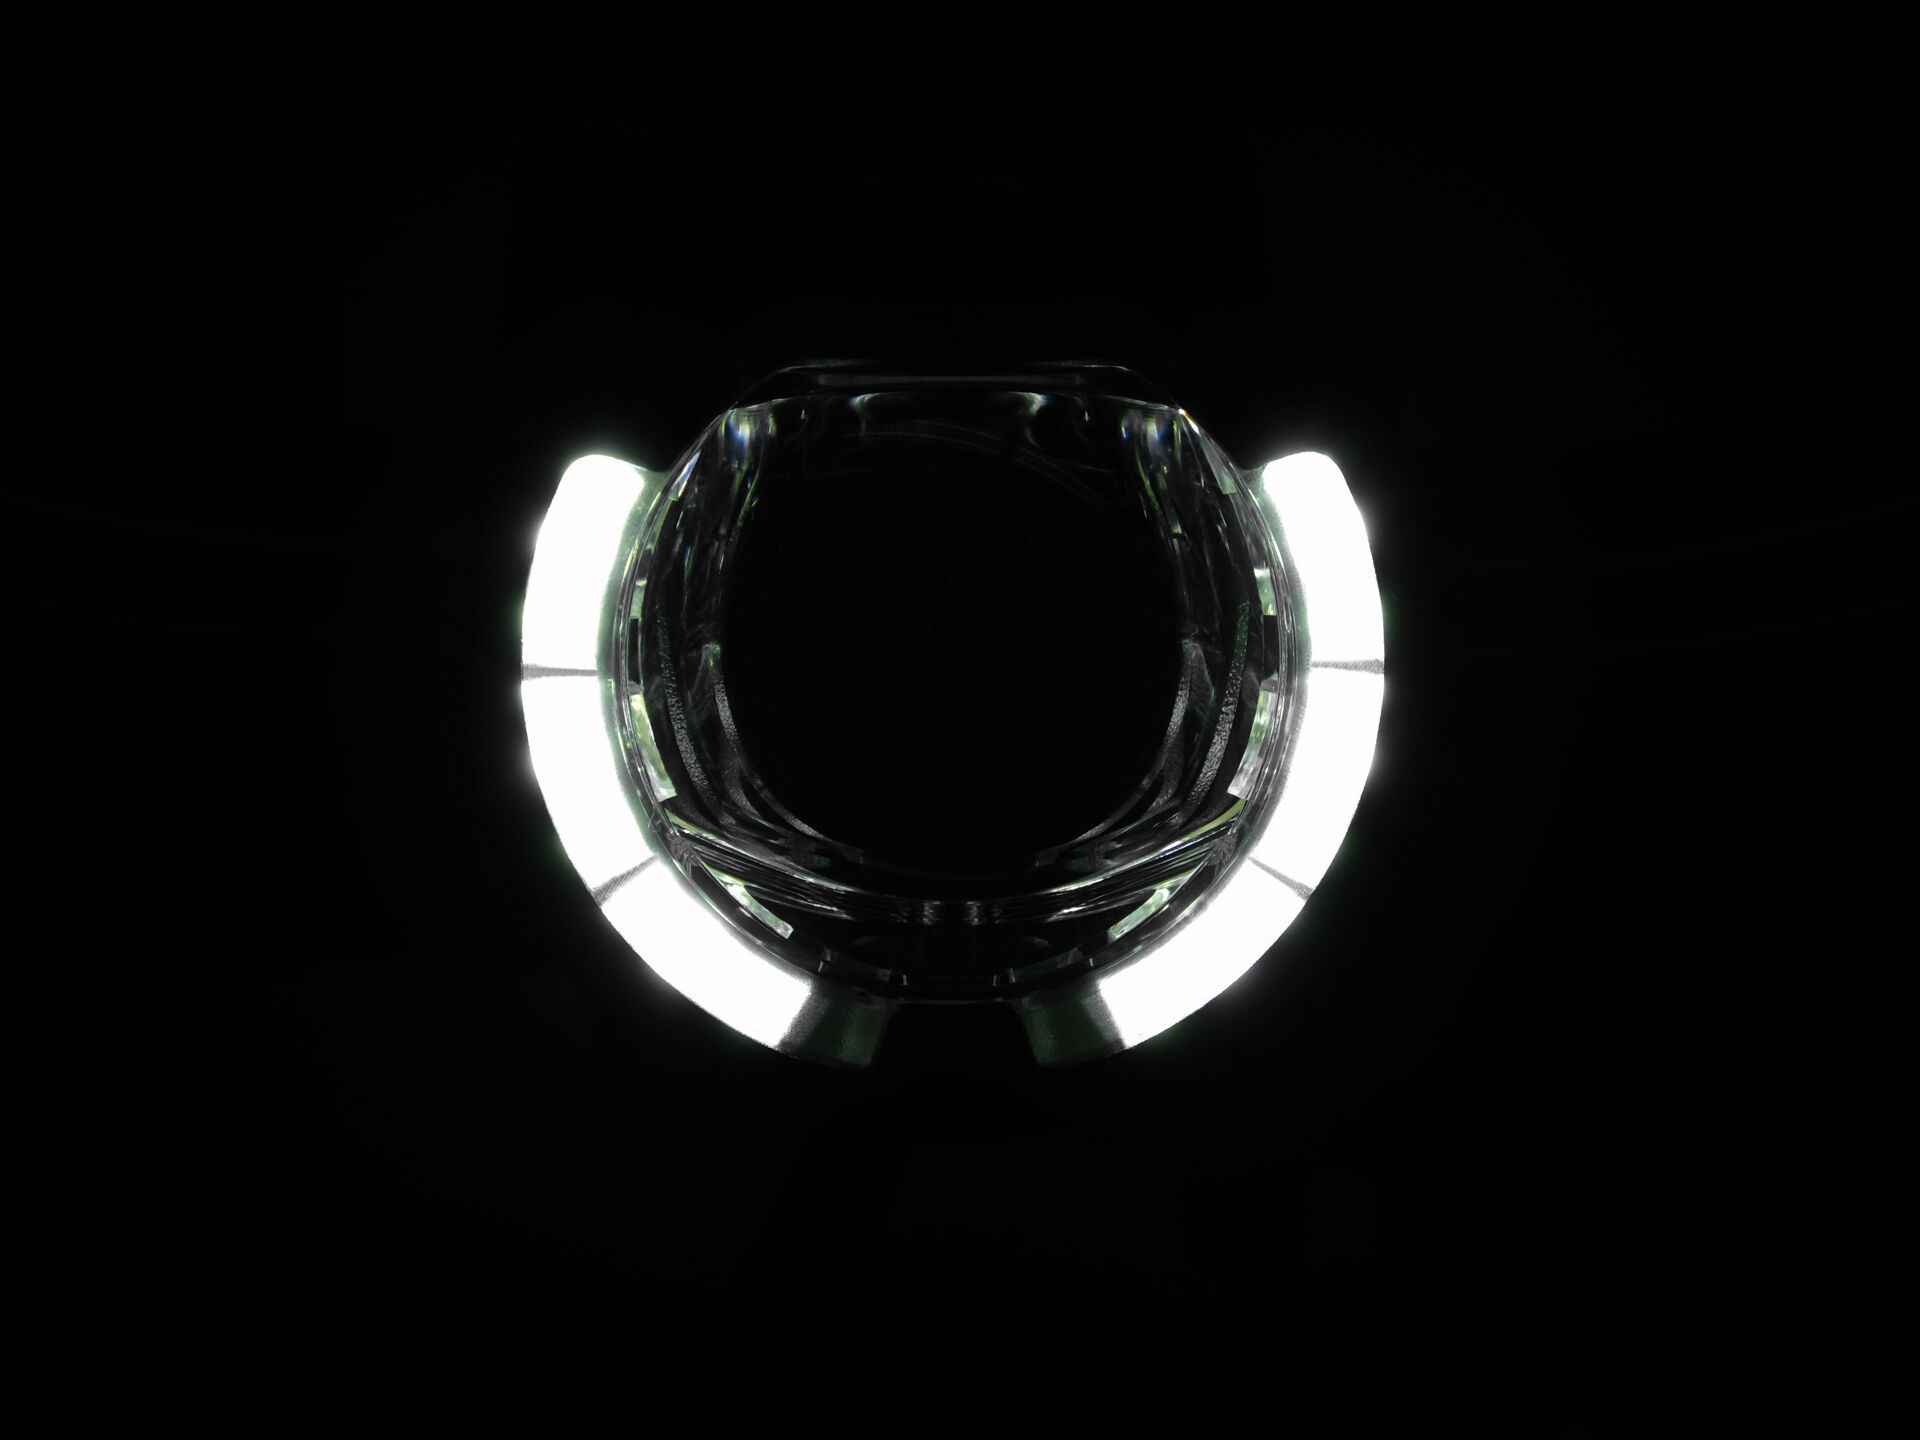 SL F BOSCH Nyon 2021 LED-Scheinwerfer mit Auf-/Abblendlicht, Schwarz